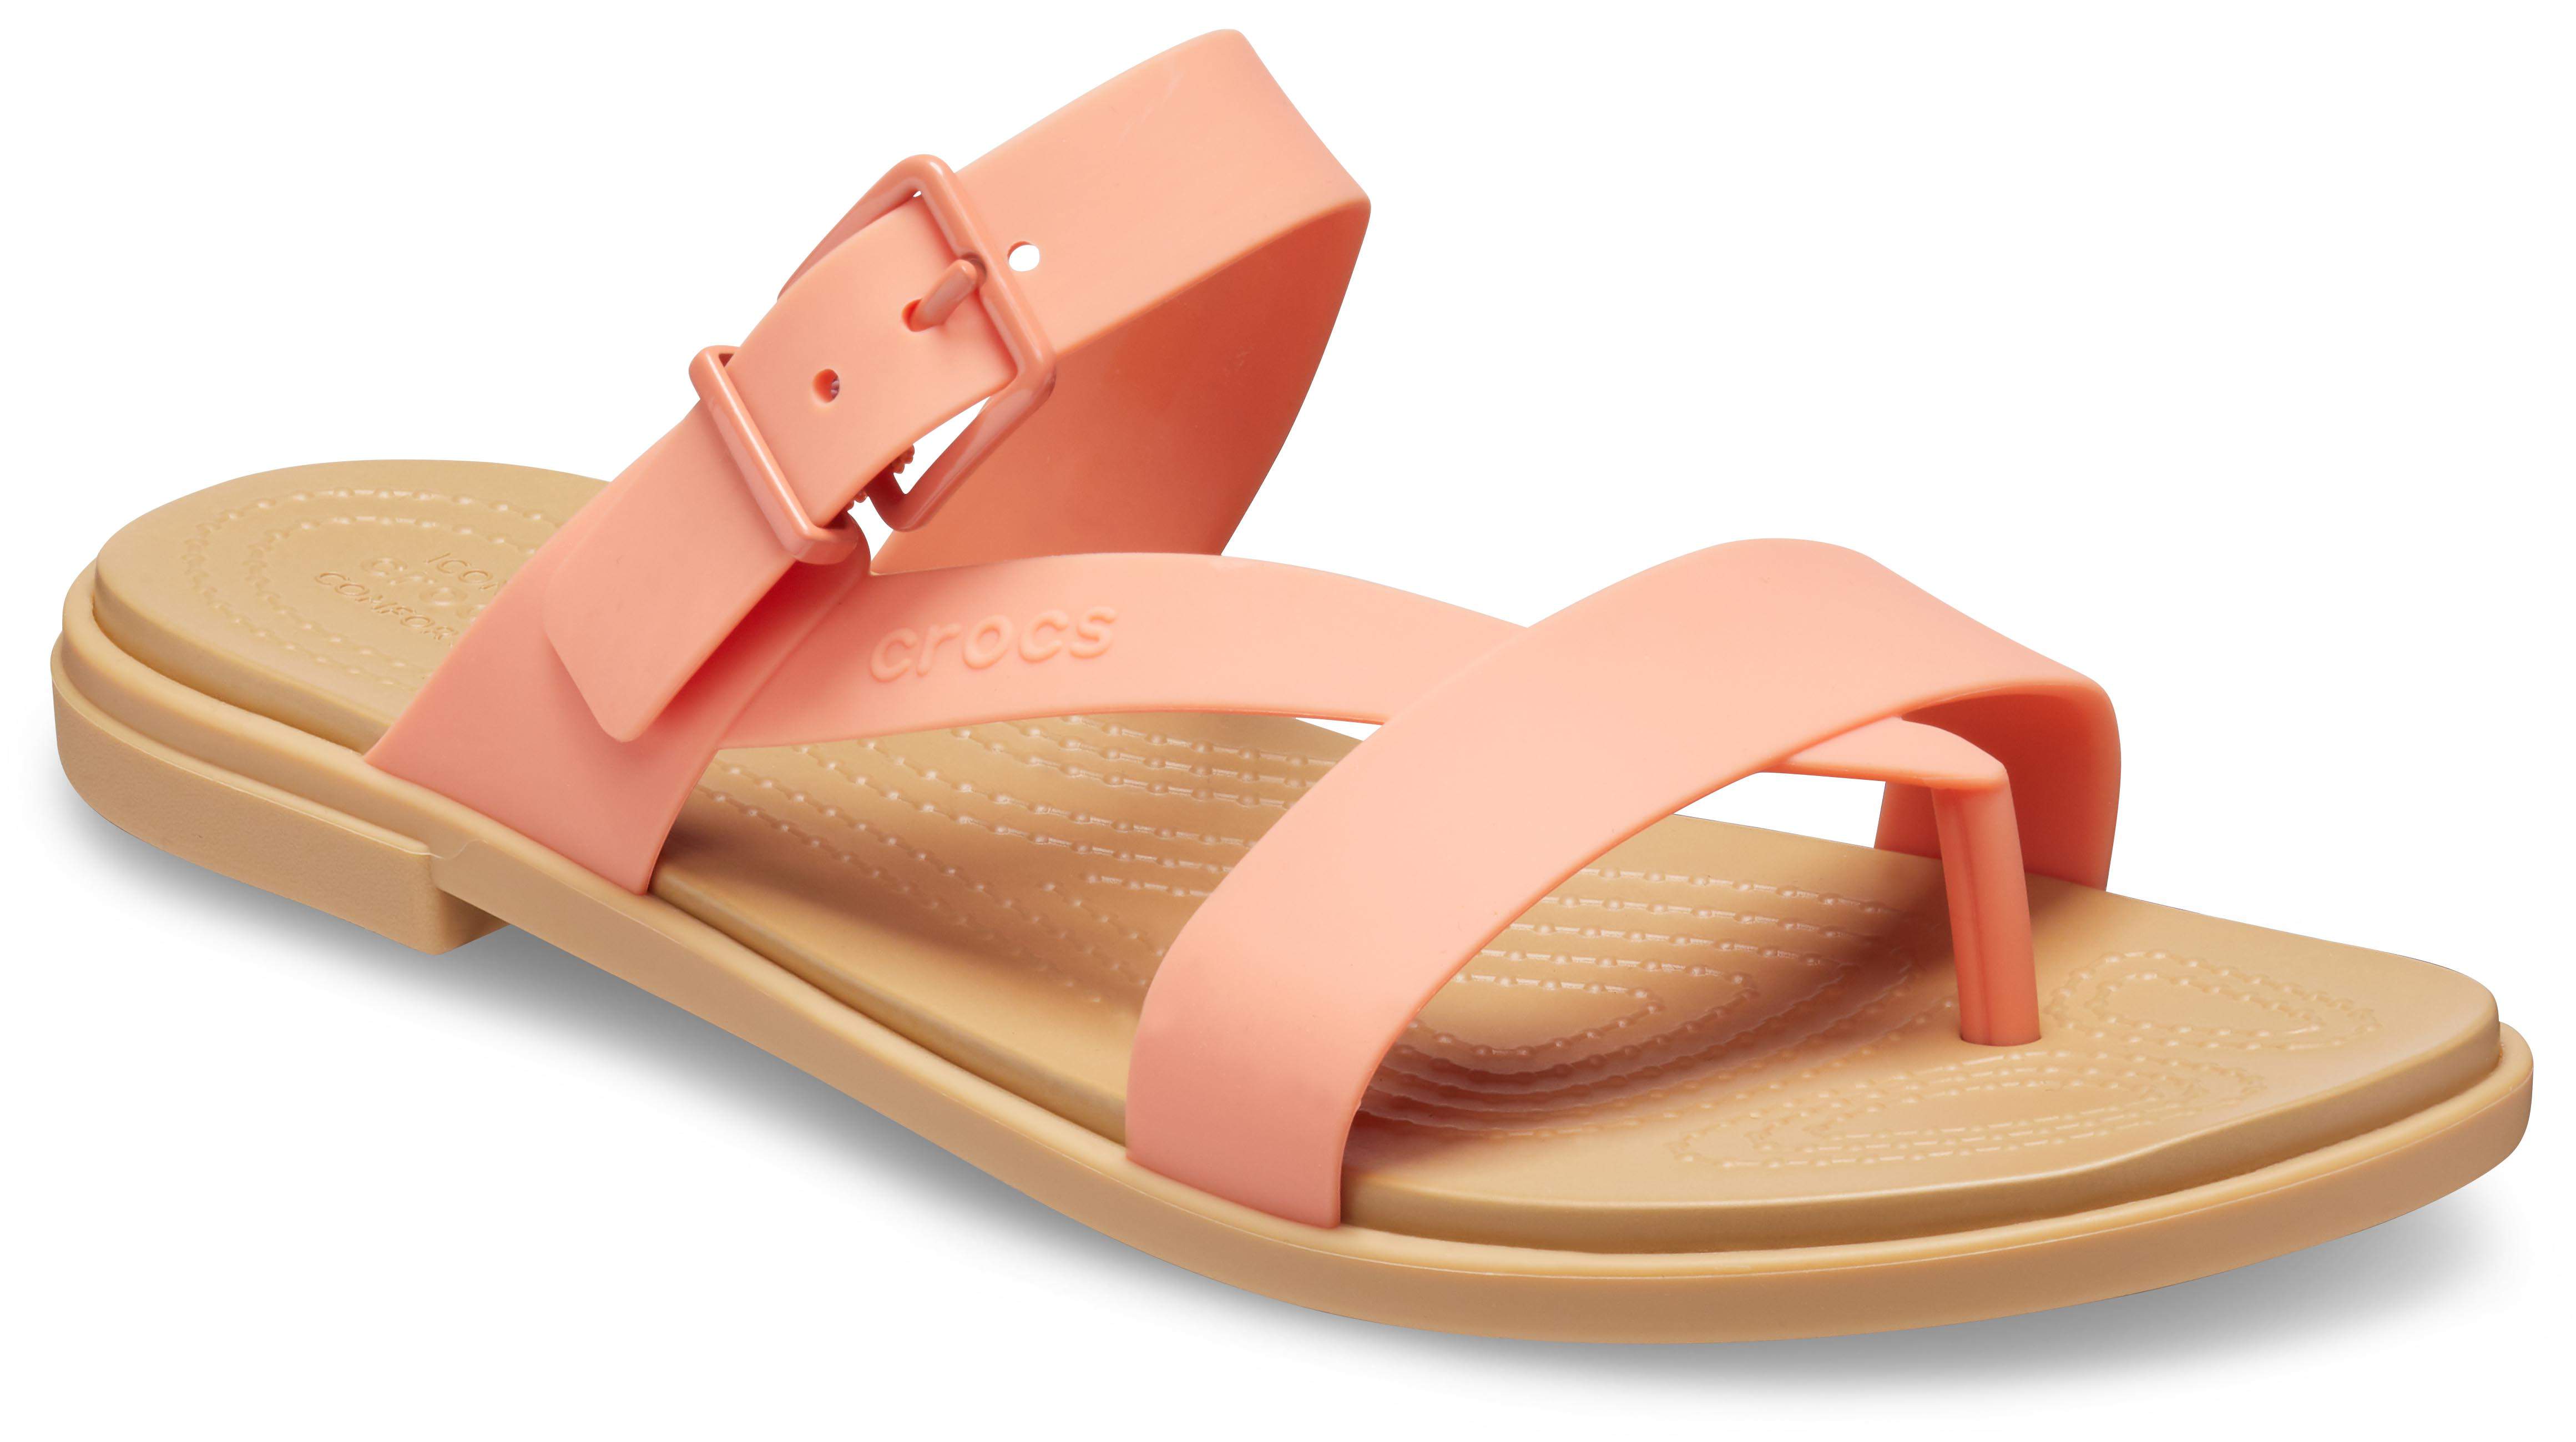 crocs women's fashion sandals